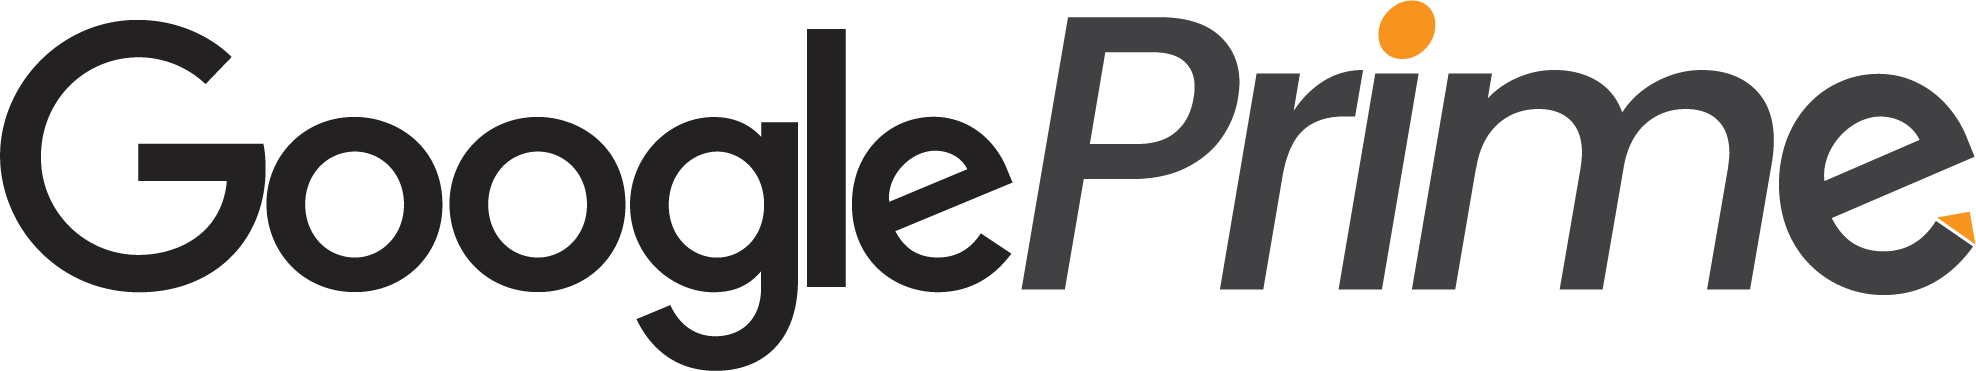 Google prime logo